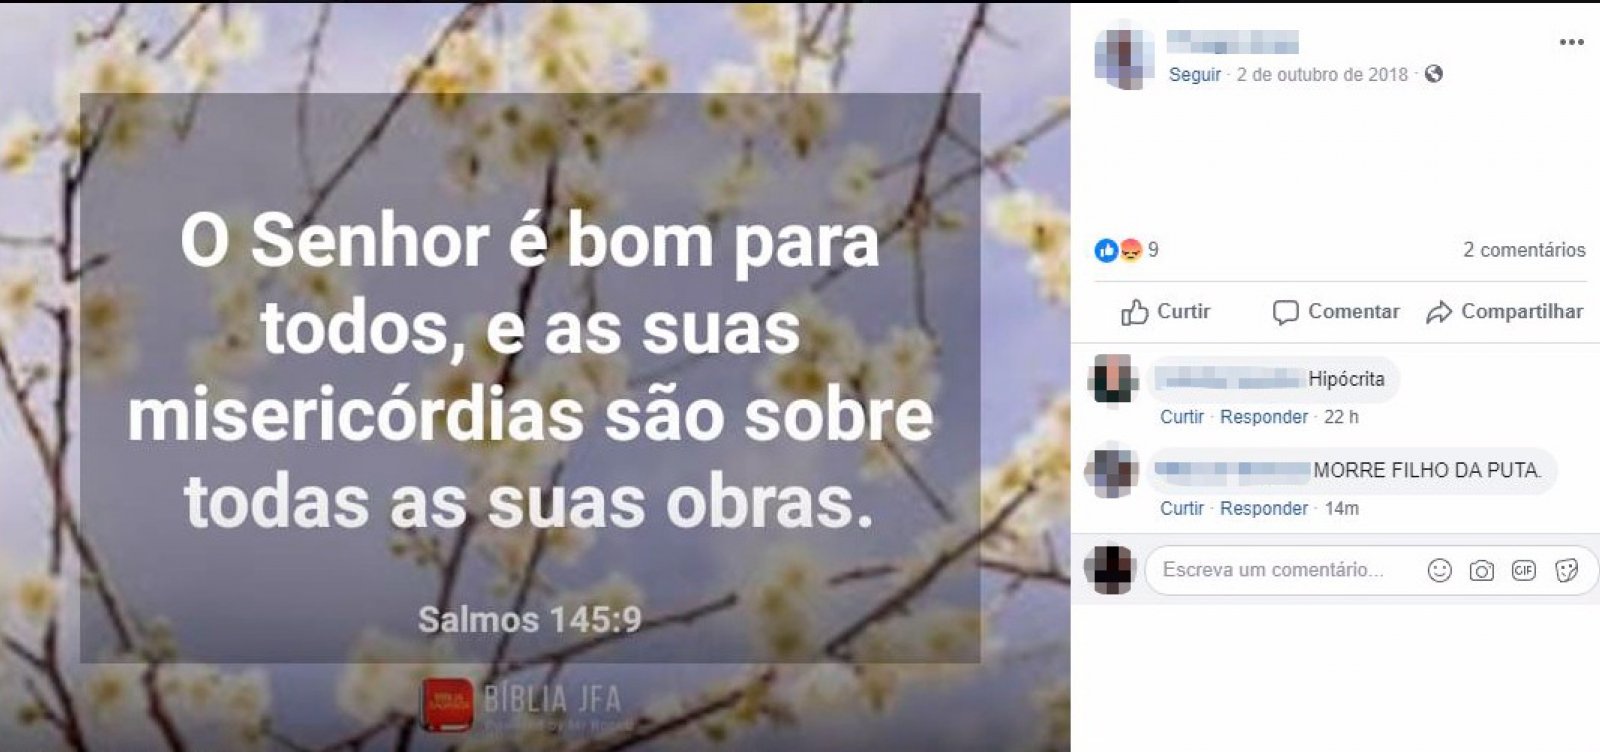 Caso Eva Luana: nas redes sociais, padrasto acusado compartilhava trechos bíblicos 